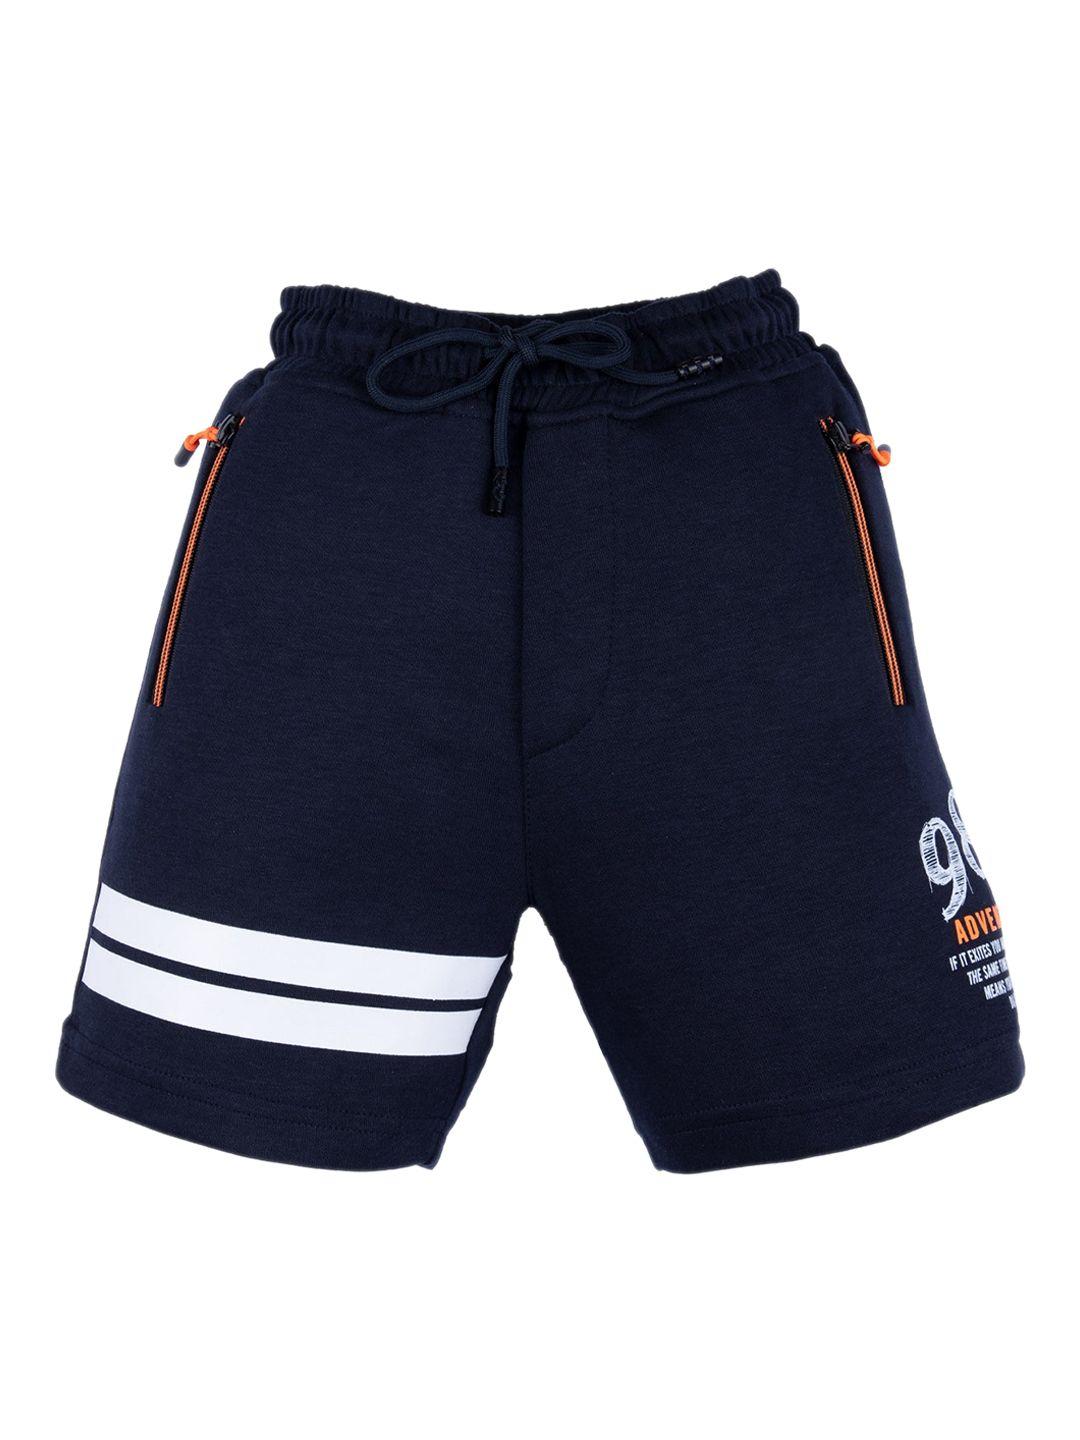 status quo boys navy blue regular fit shorts